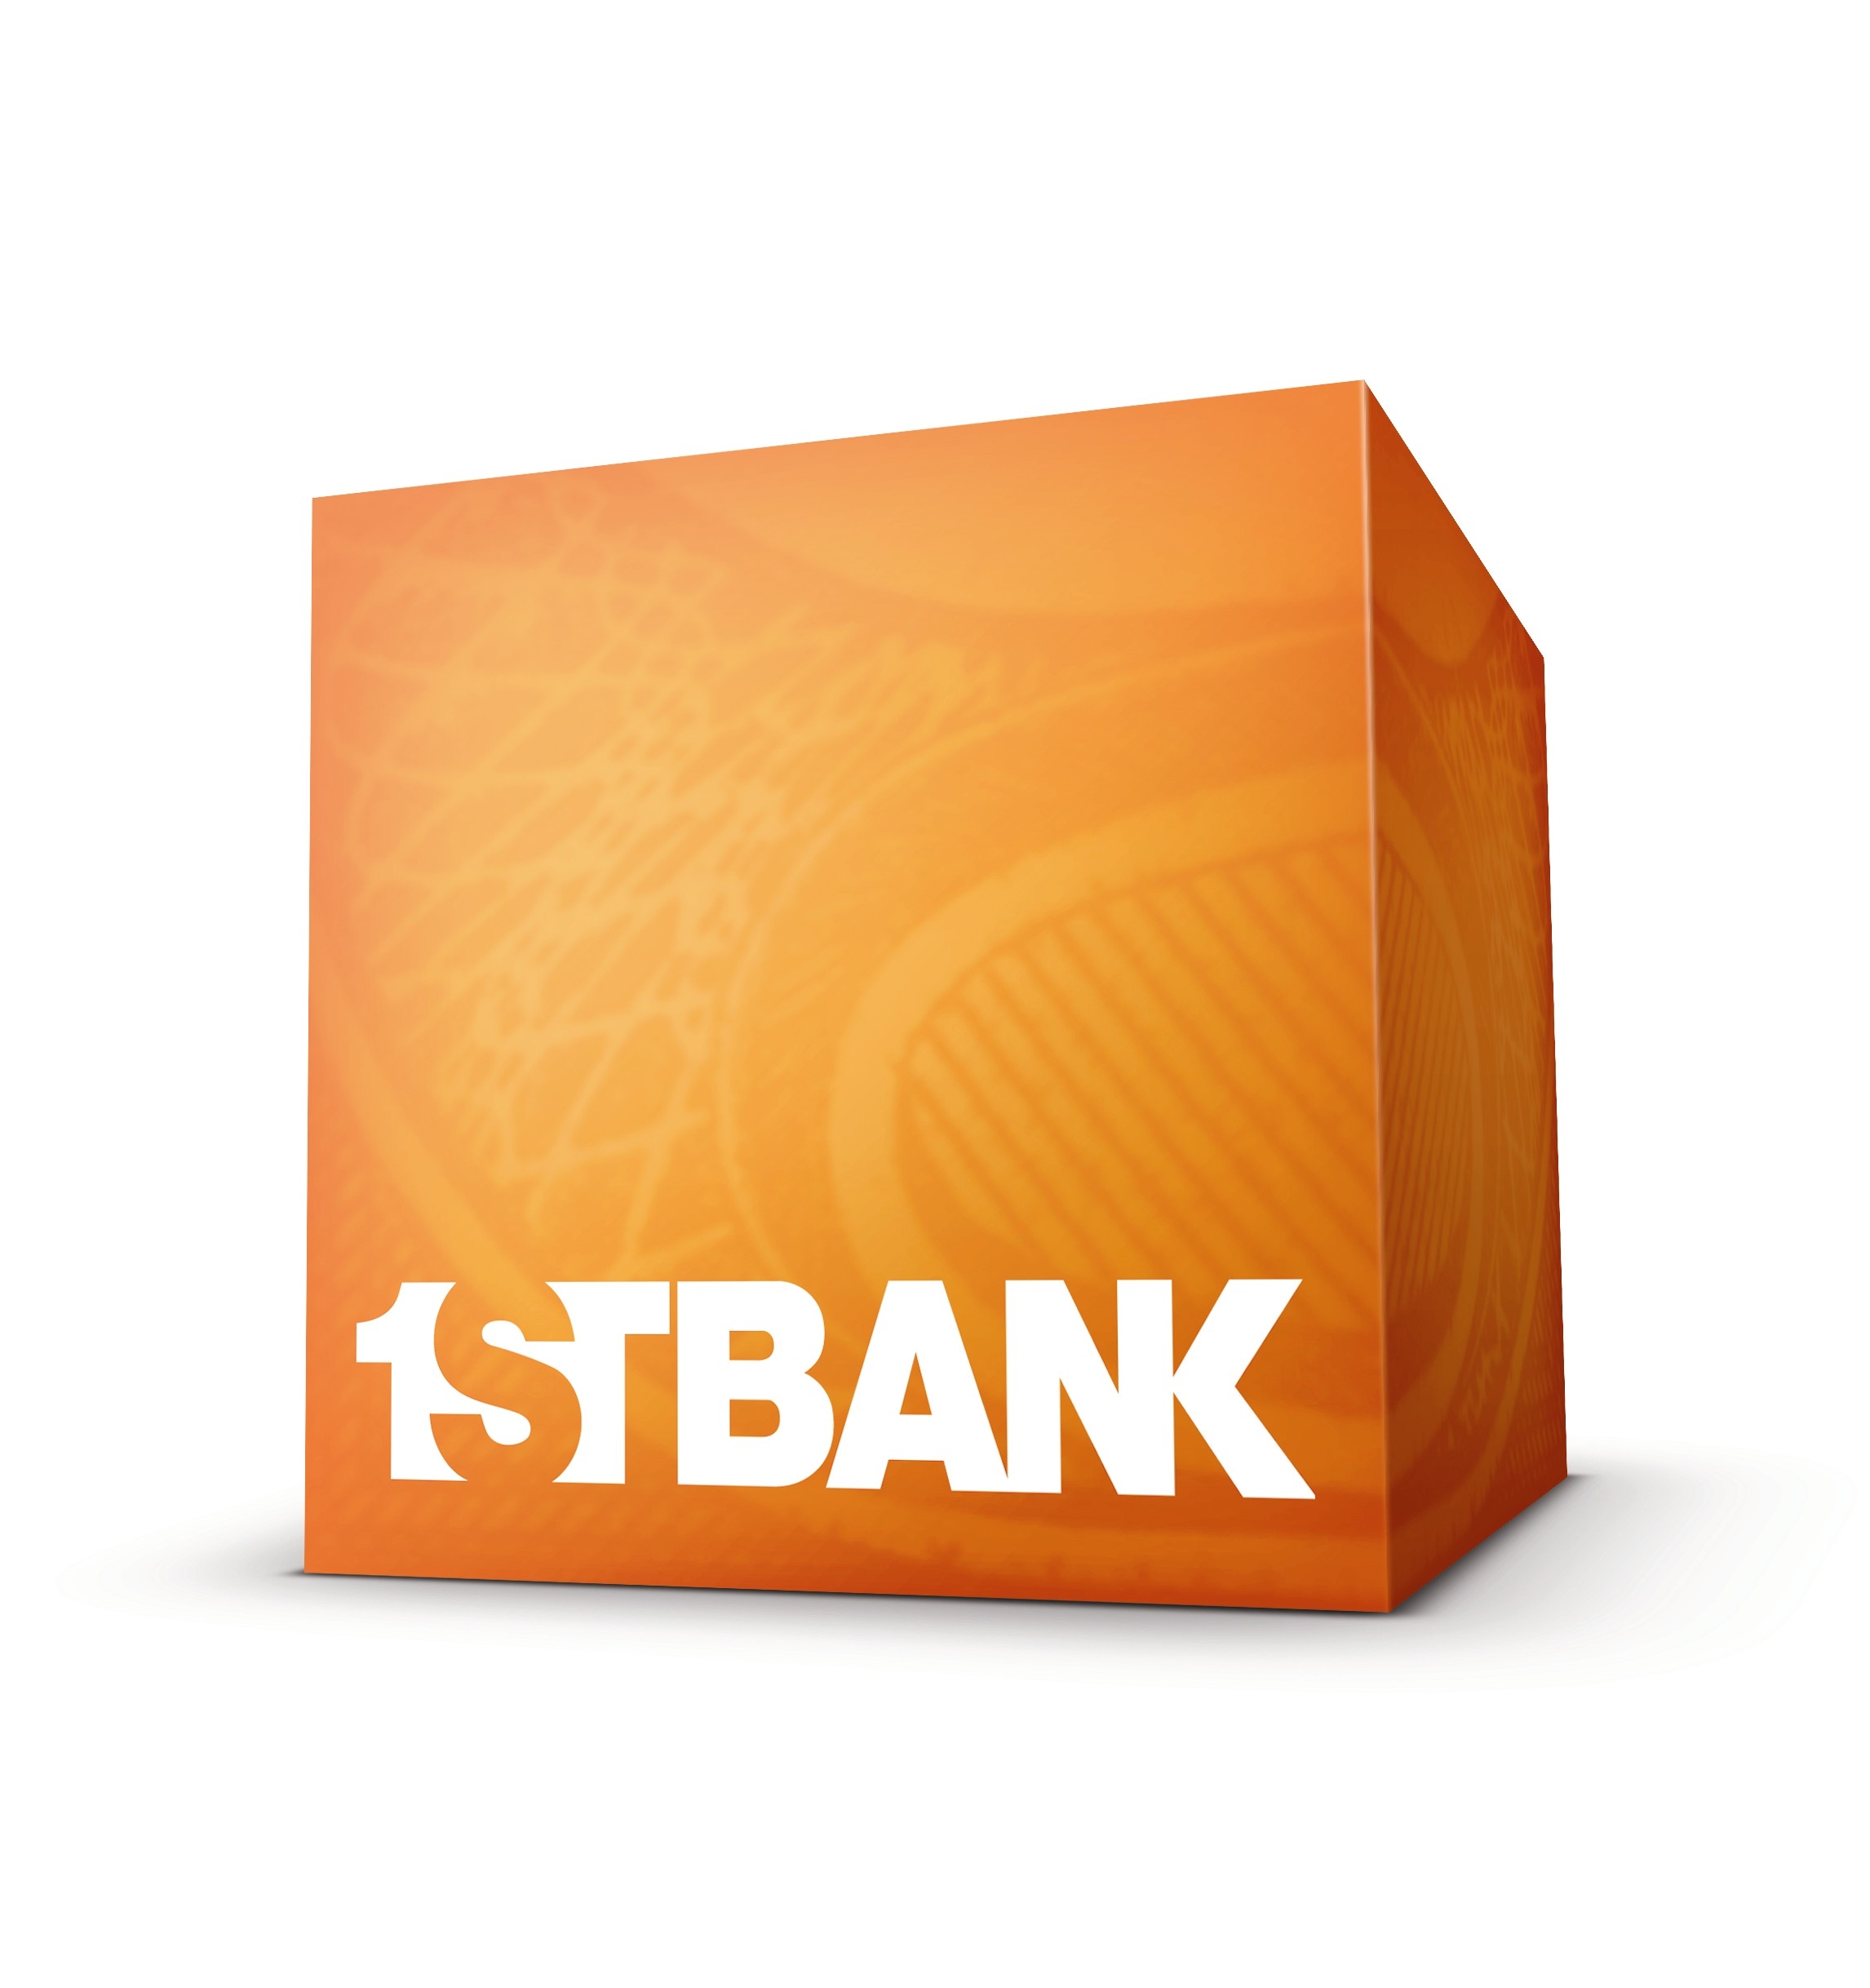 1stBank_logo